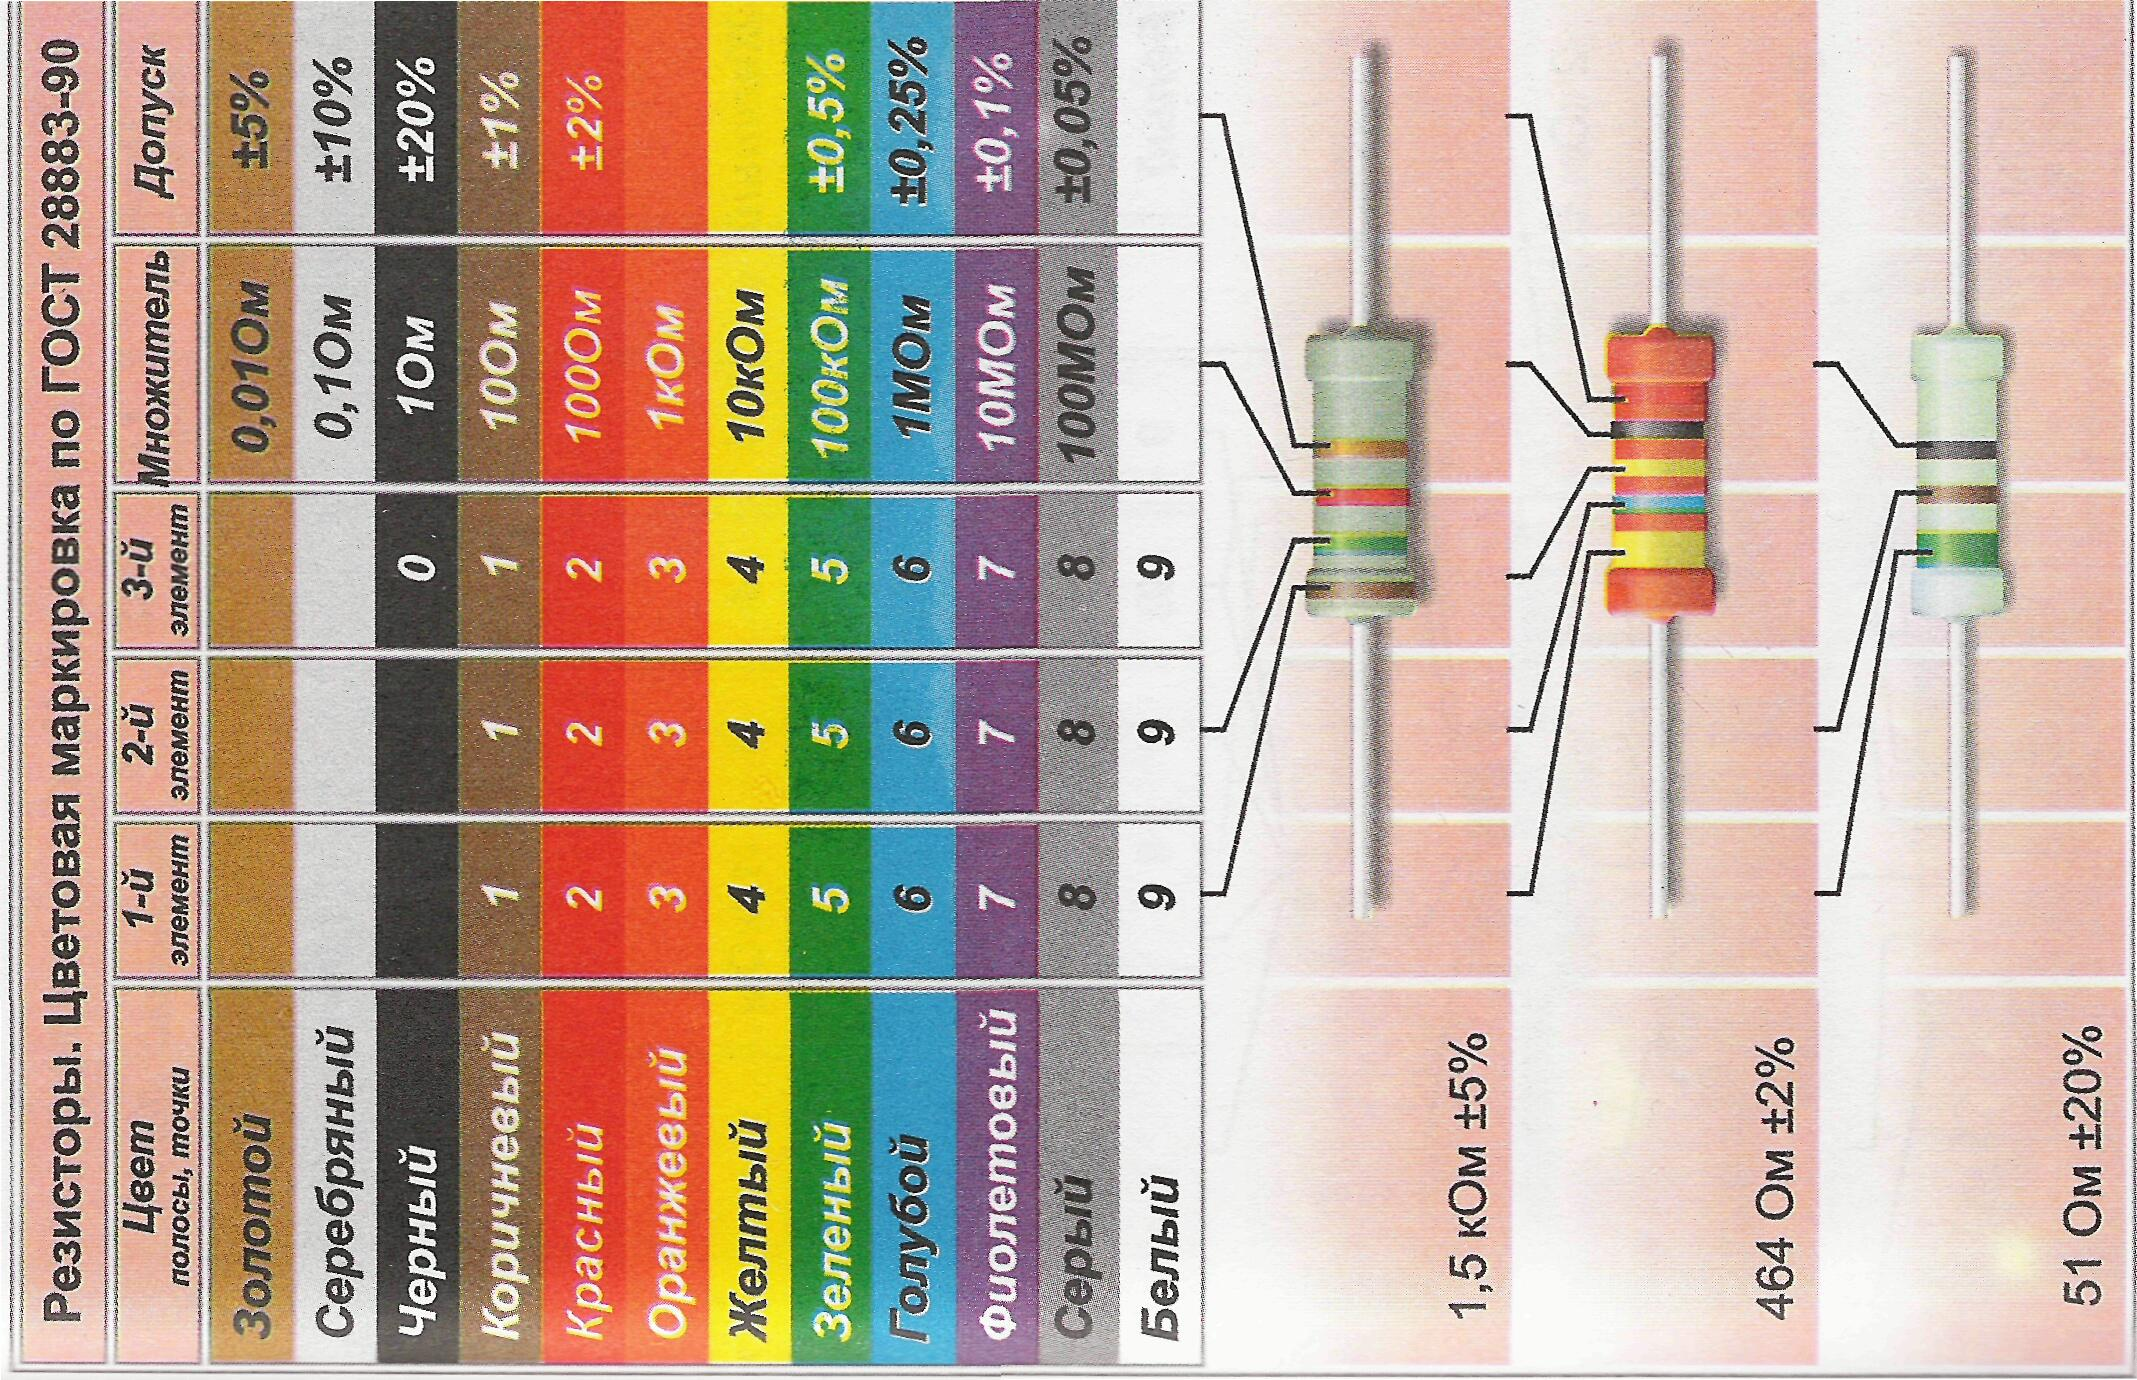 Маркировка smd резисторов – как прочитать номинал smd резистора | уголок радиолюбителя